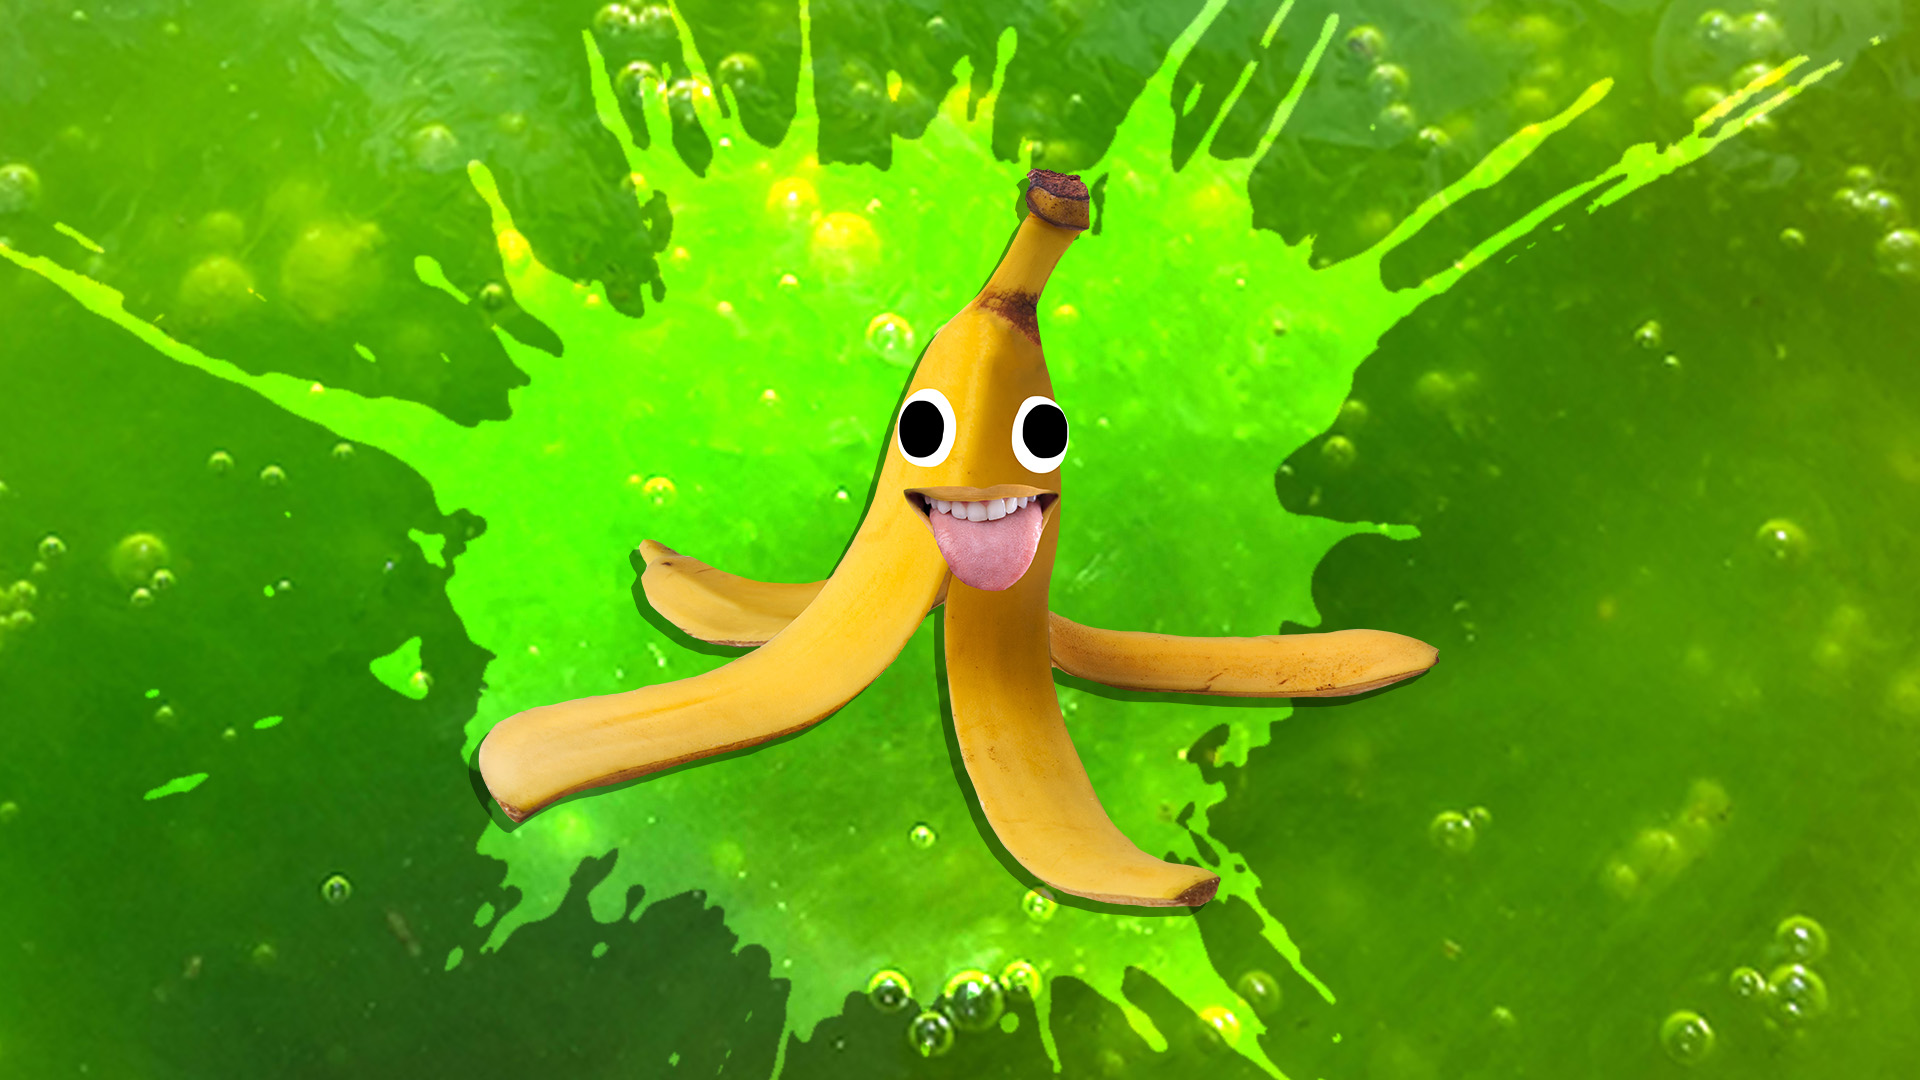 A banana on a slime background